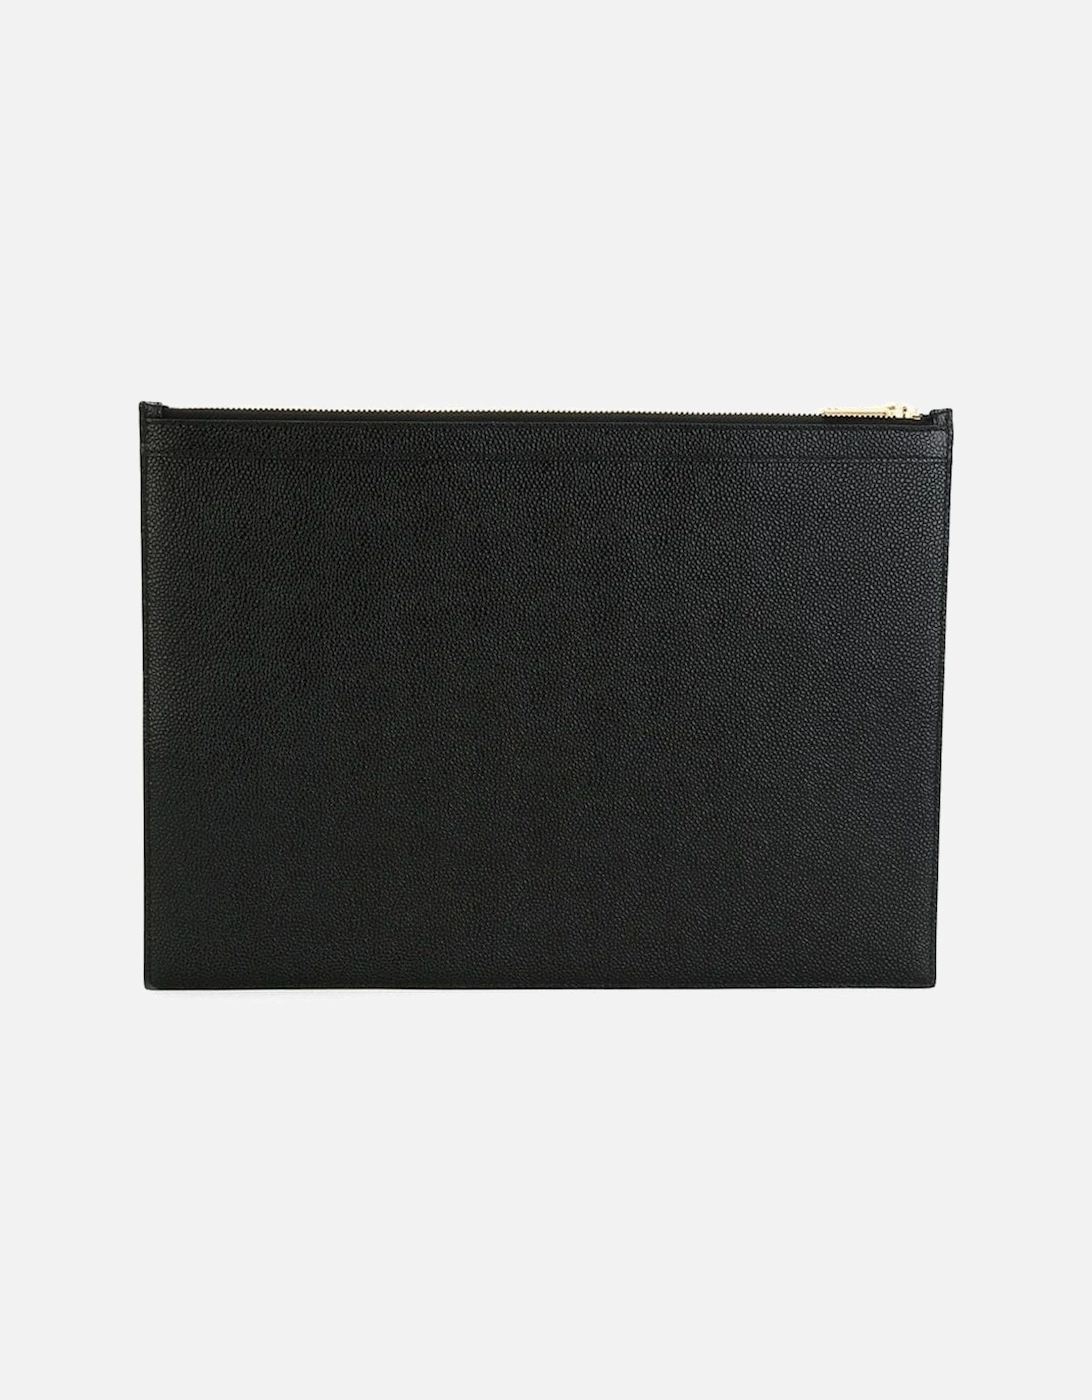 Grain Leather Document Holder Black